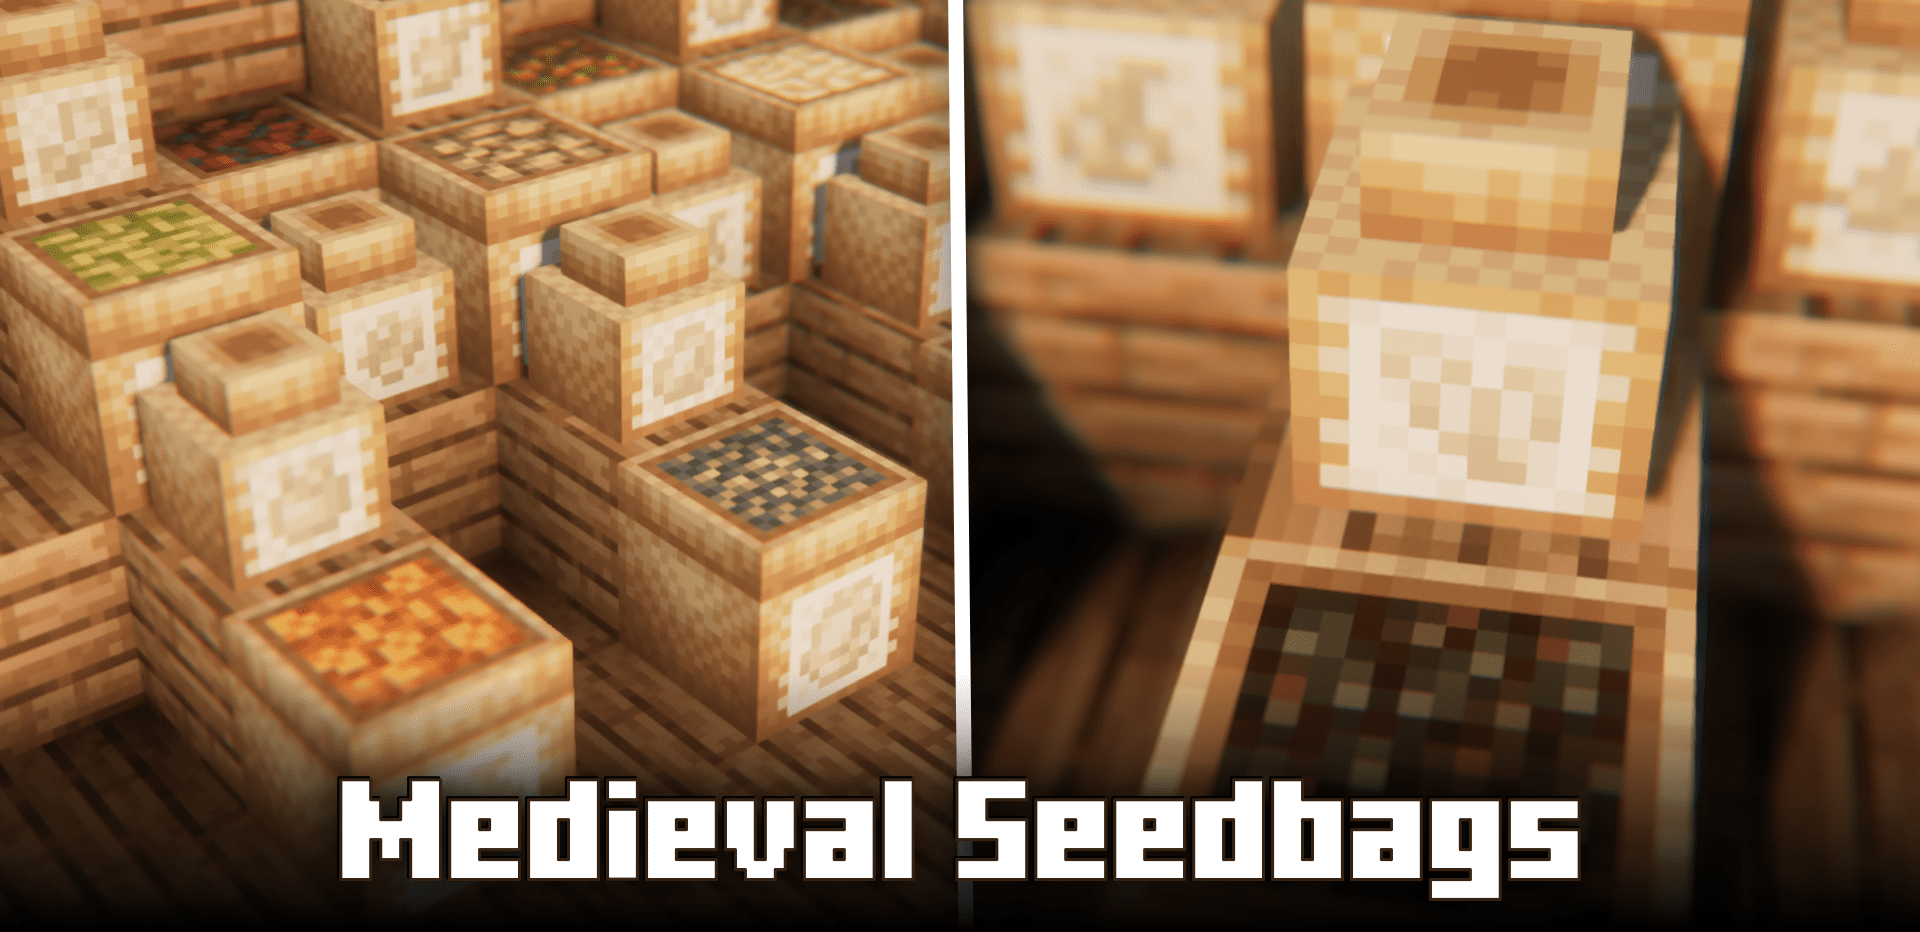 Medieval Seedbags screenshot 1